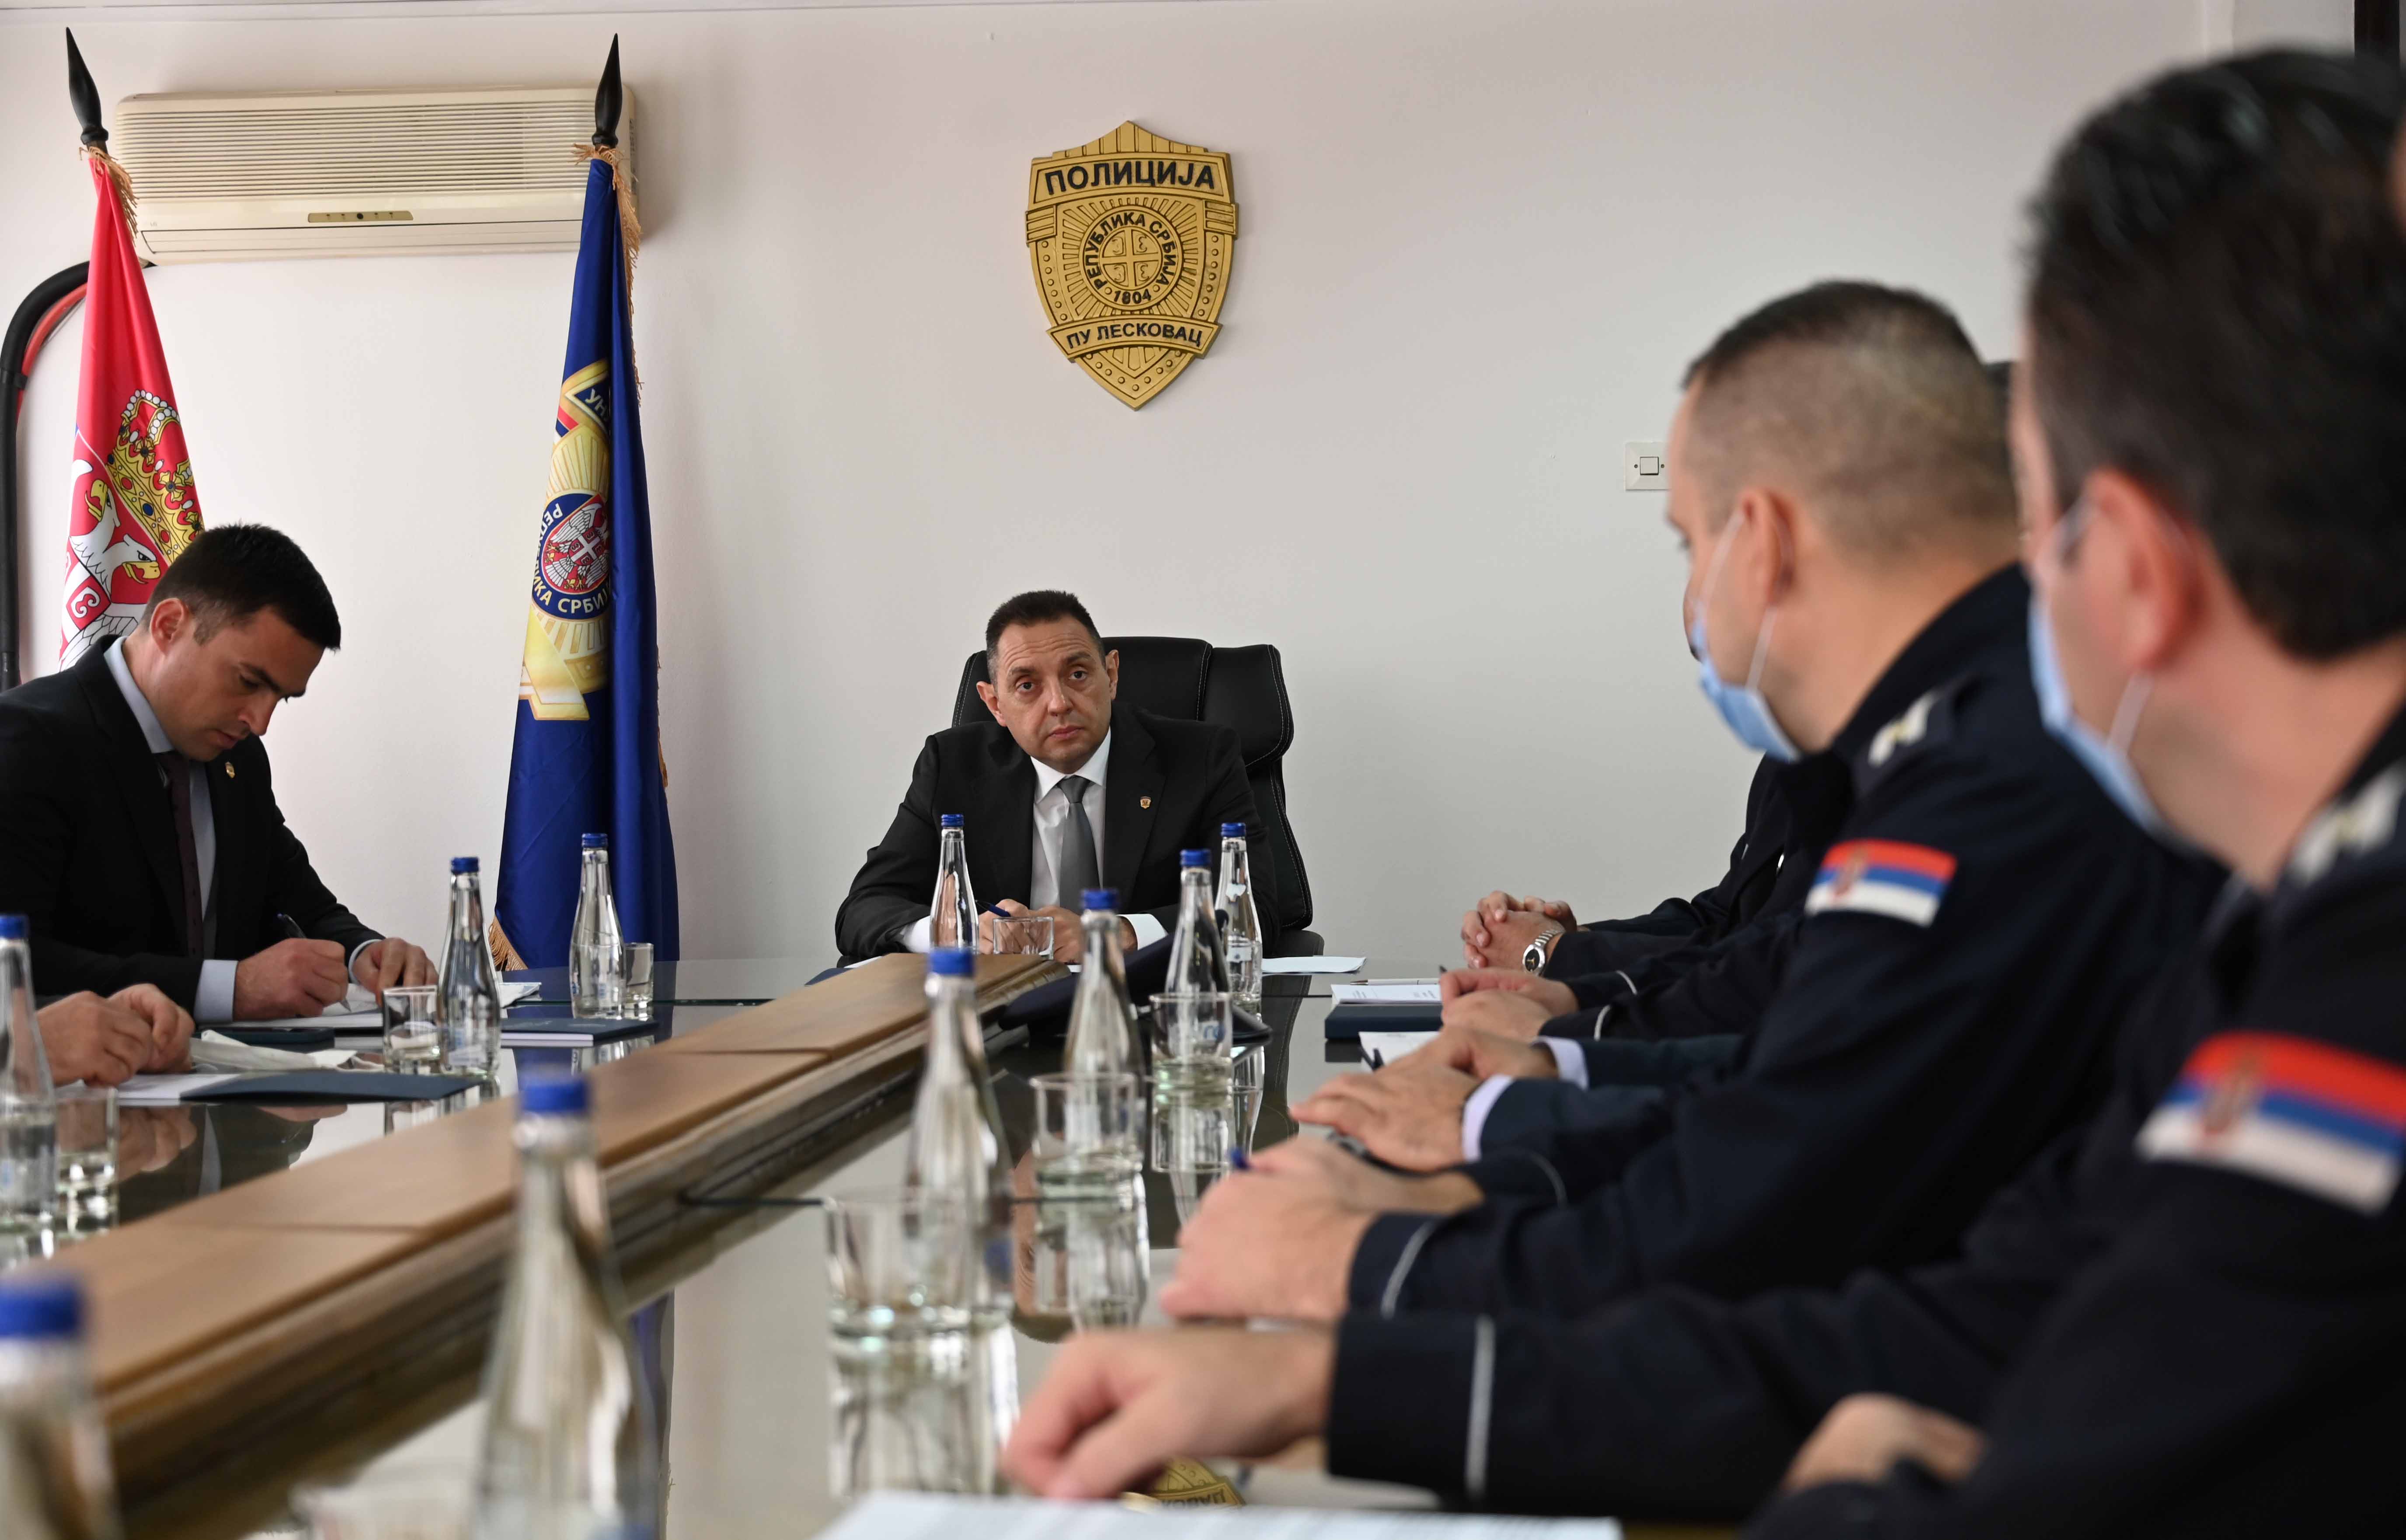 Ministar Vulin u poseti PU Leskovac: Od svake policijske uprave očekujem još intenzivniji obračun sa uličnim kriminalom